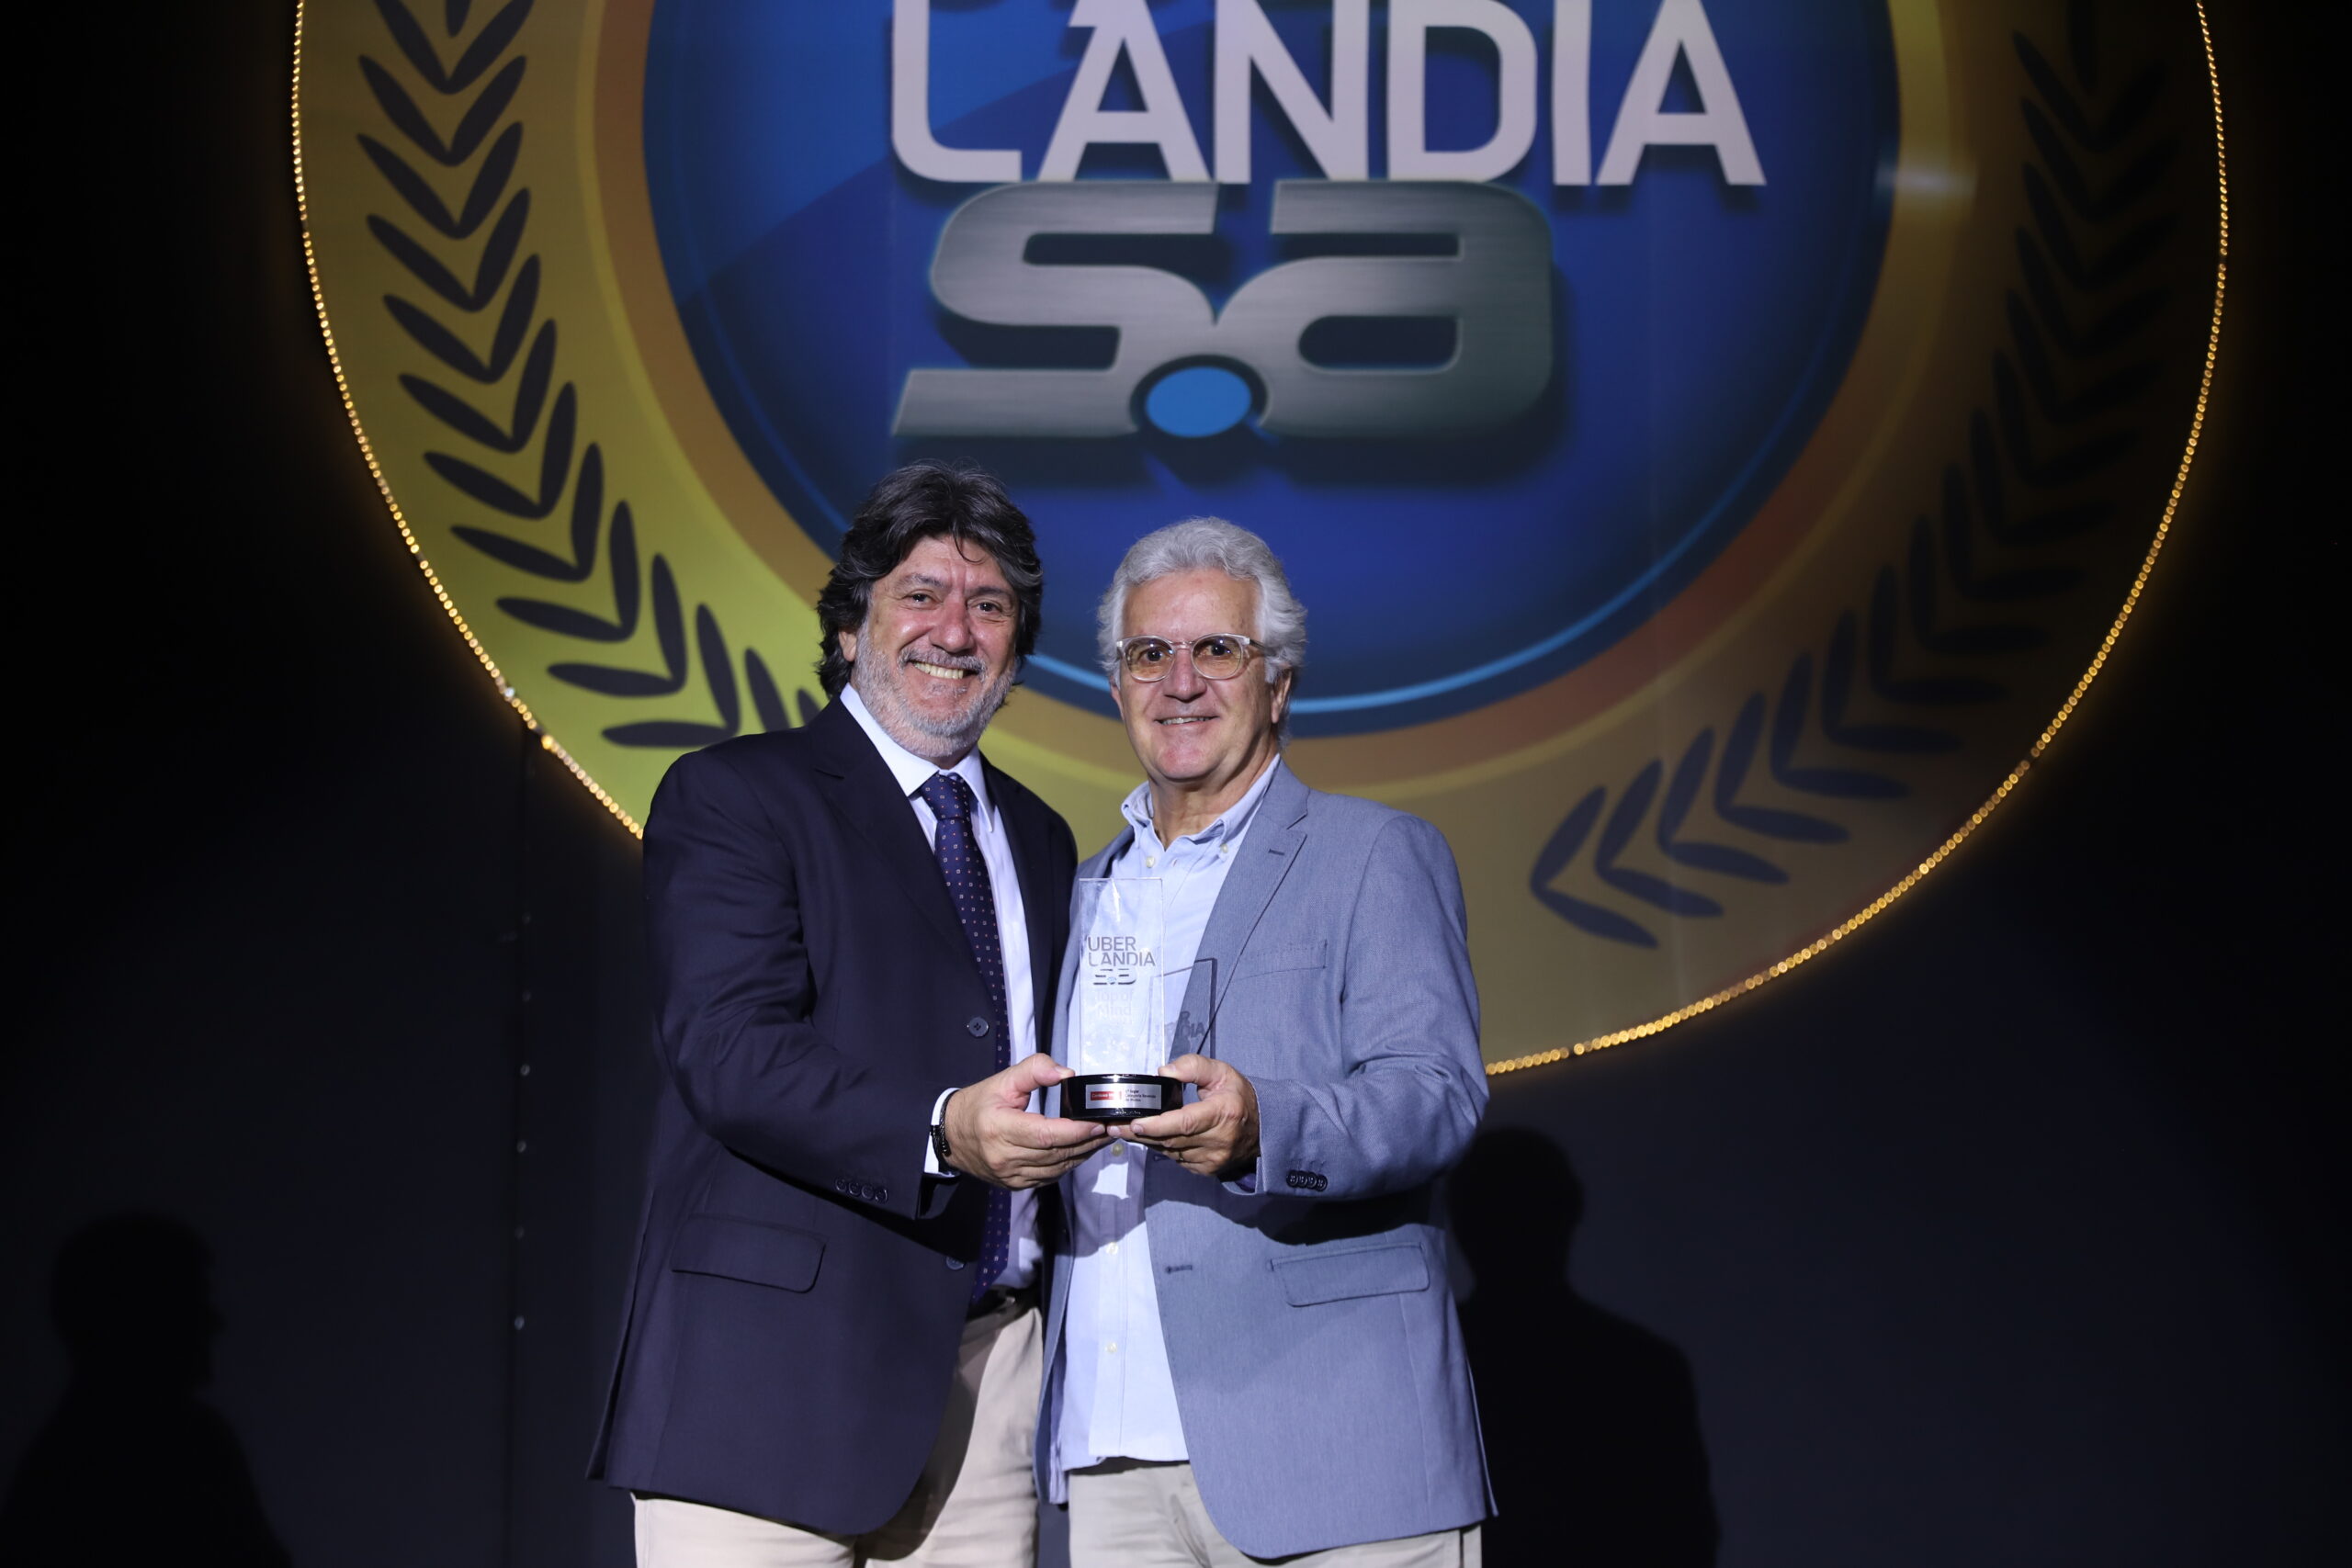 Autódromo de Interlagos completa 80 anos de história - Cardoso Moto